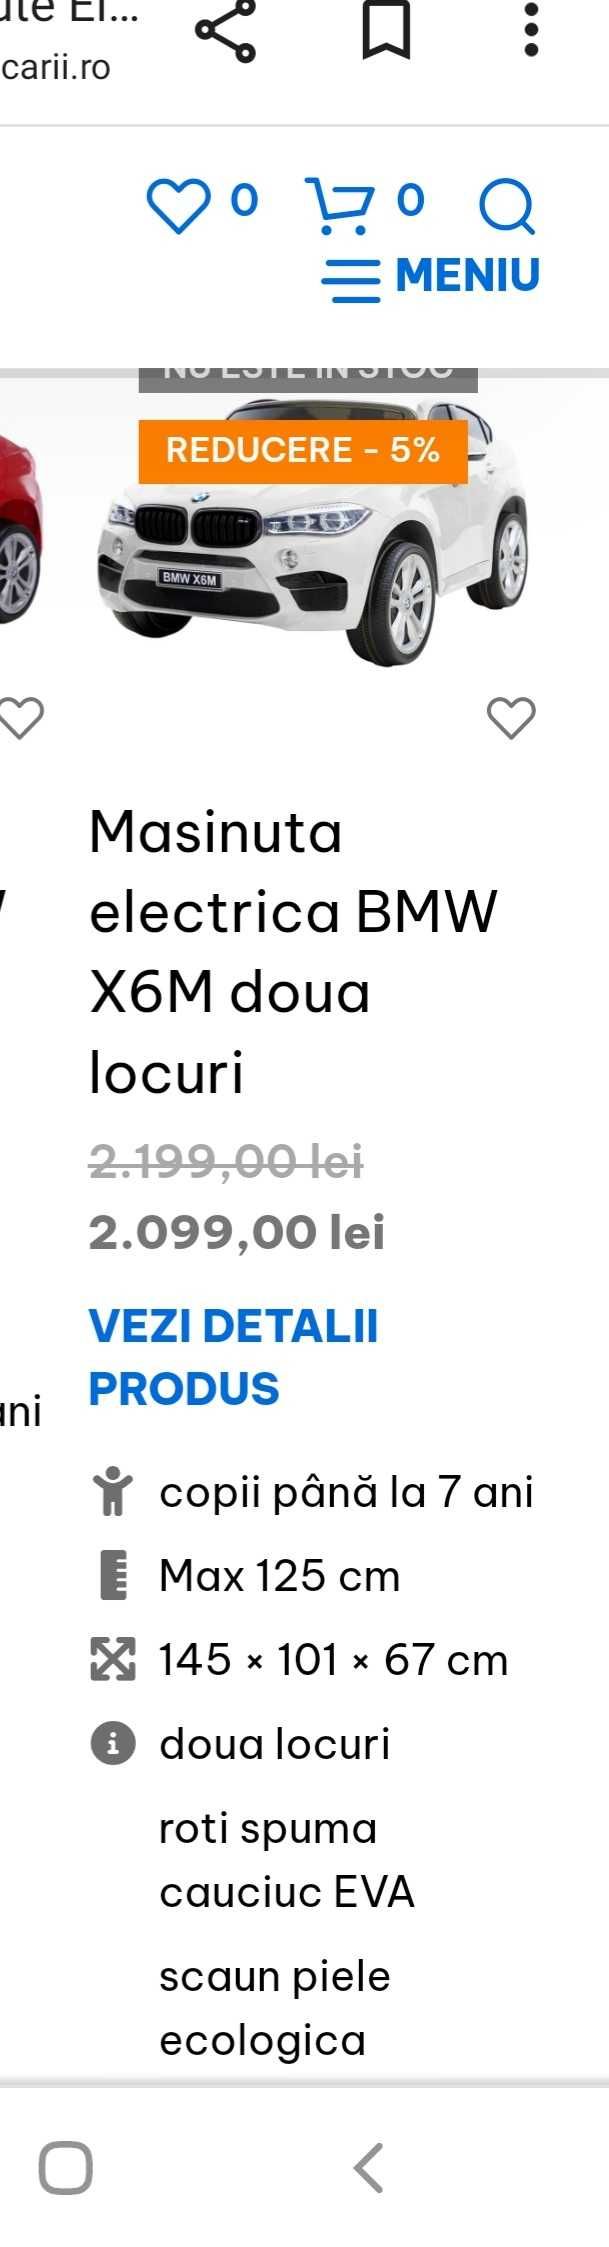 Vând mașinuța electrica BMW X6M